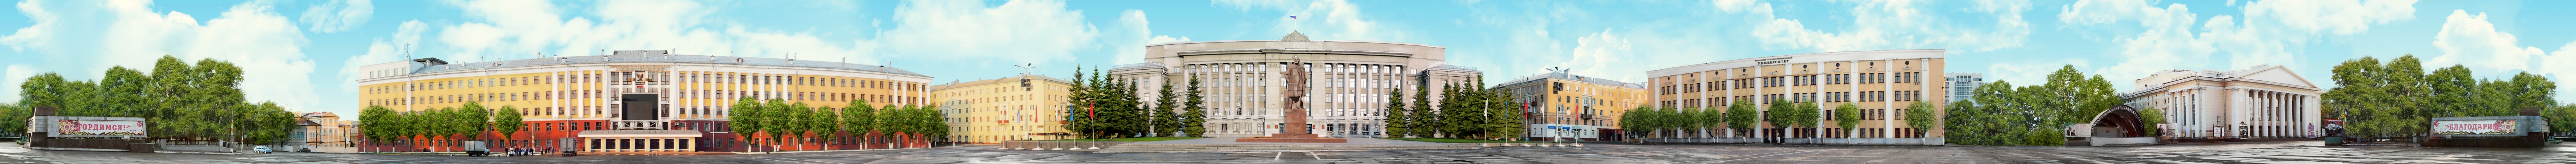 Театральная площадь — административный, научный, образовательный и культурный центр города Кирова и Кировской области